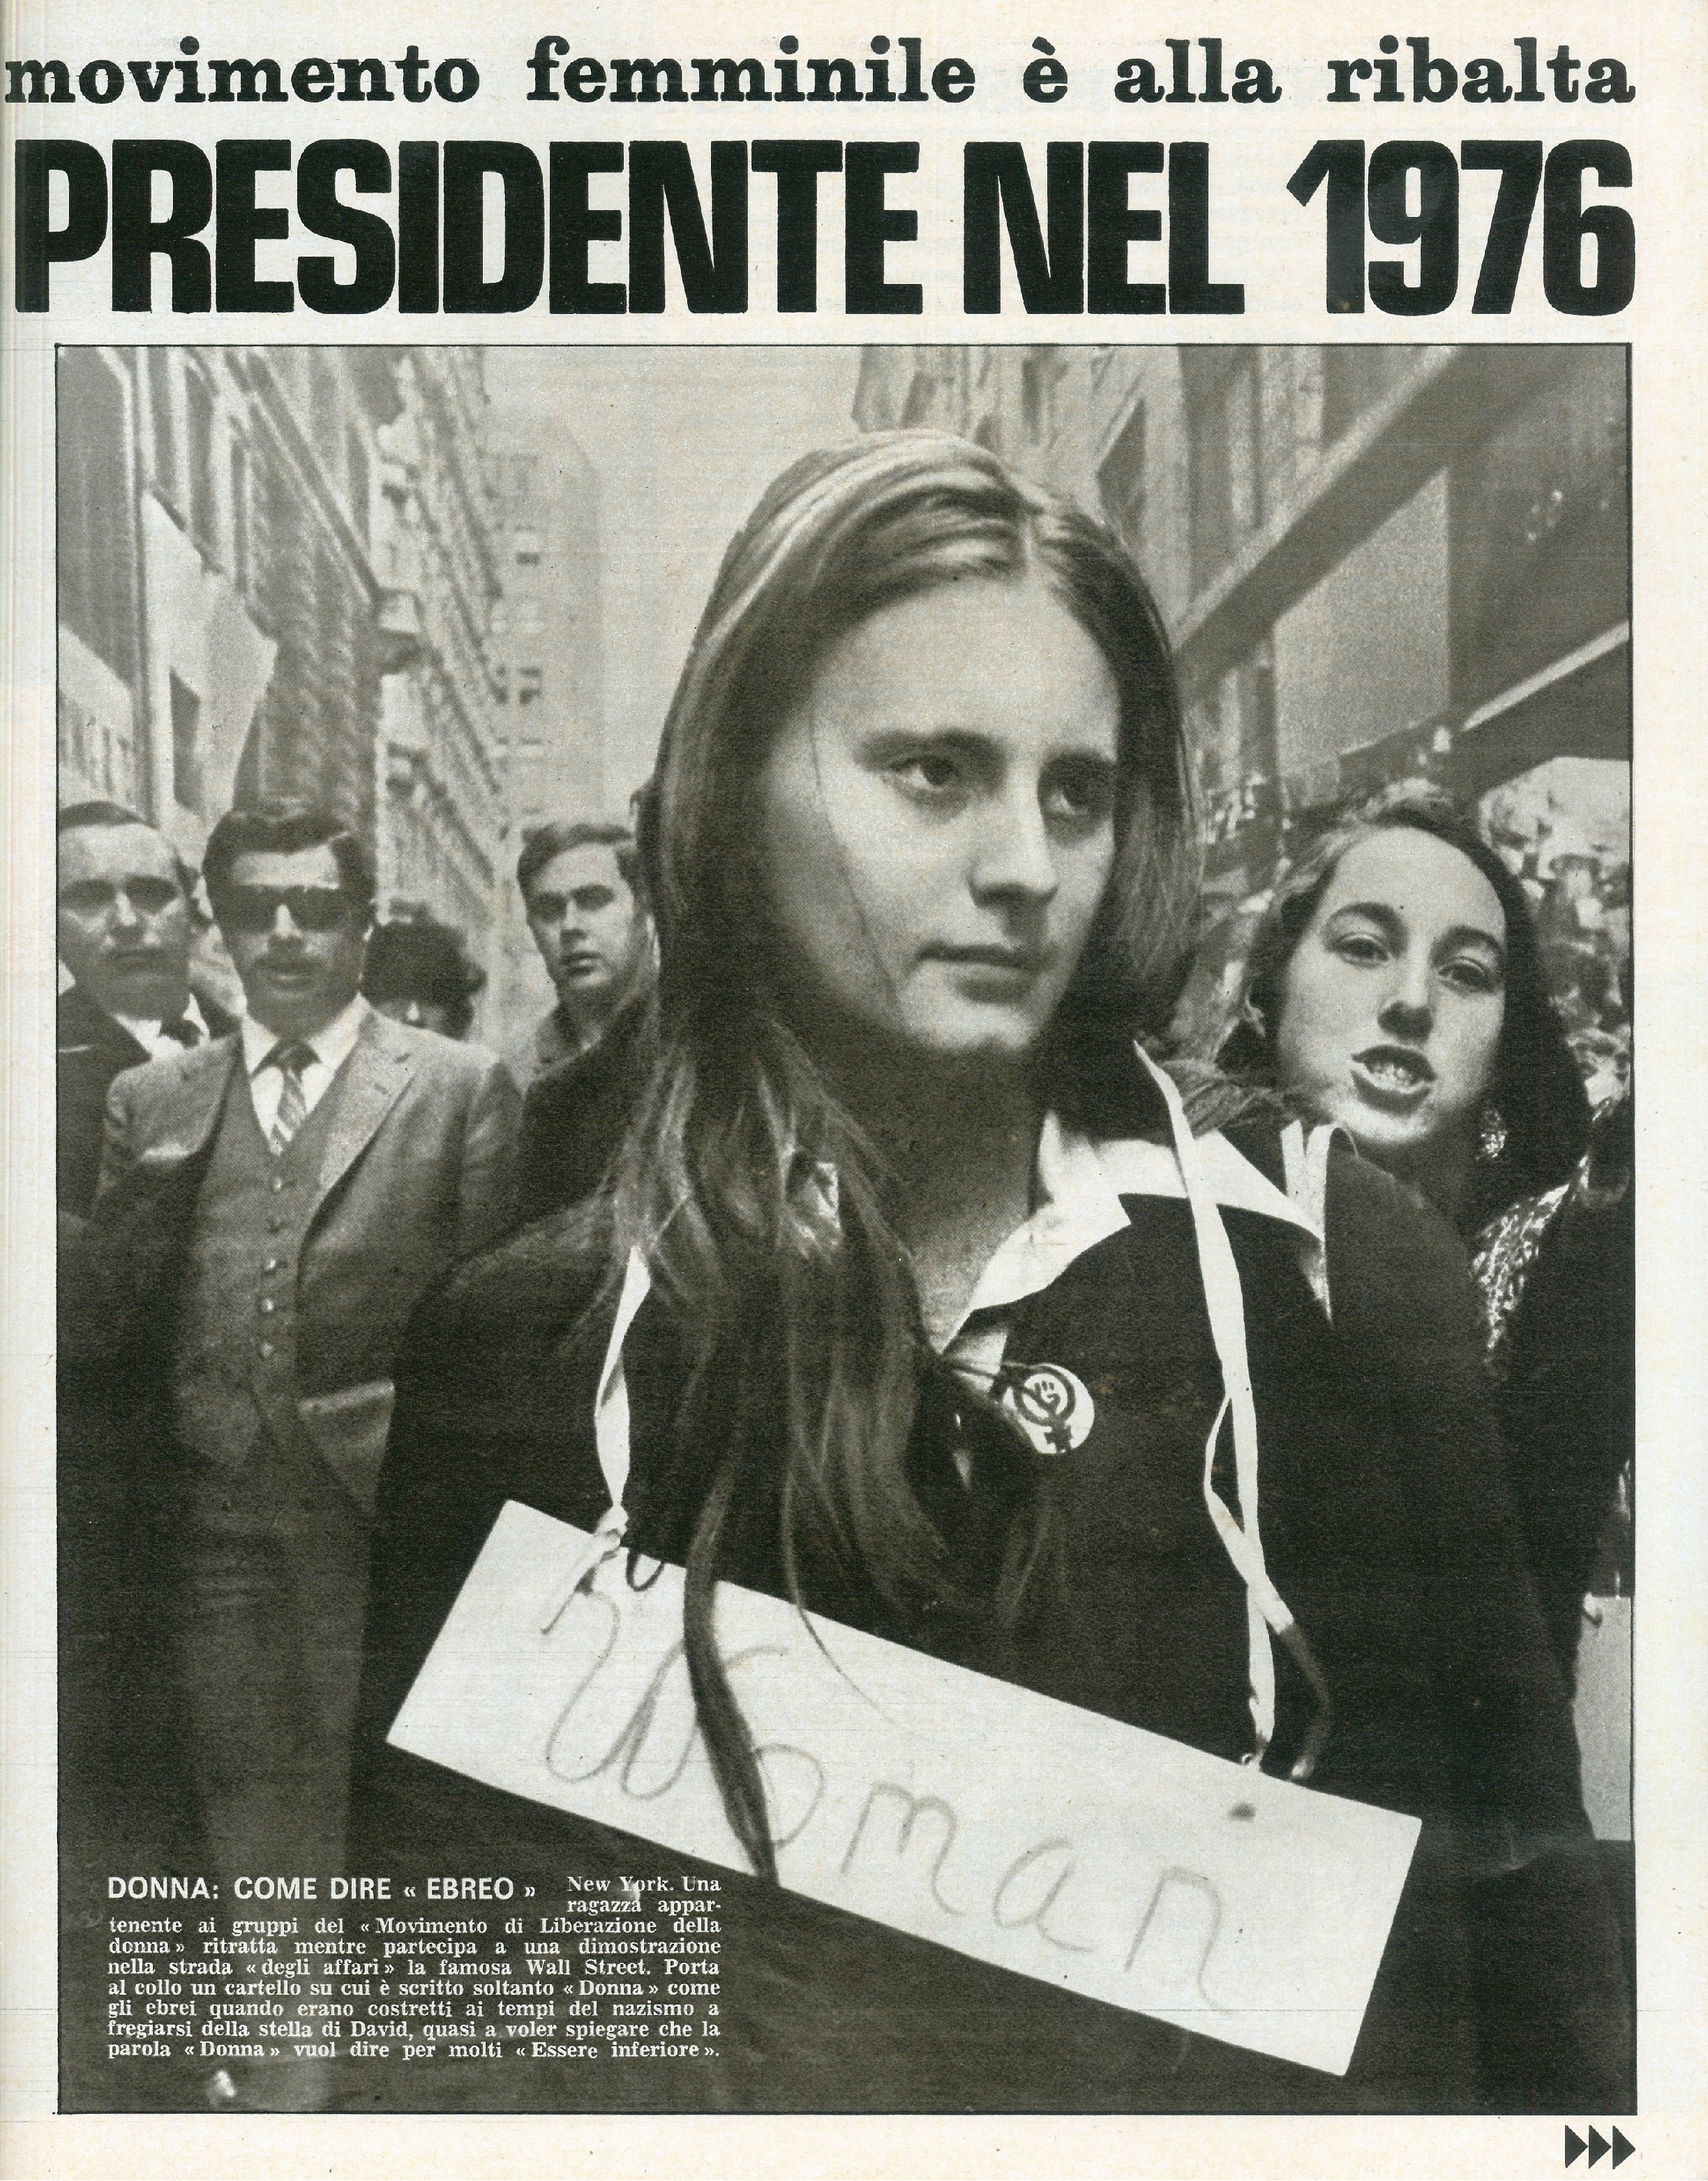 Foto: Le donne comuniste 1970 cercano una forza e non un mito mentre negli USA si pensa ad una donna alla Casa Bianca